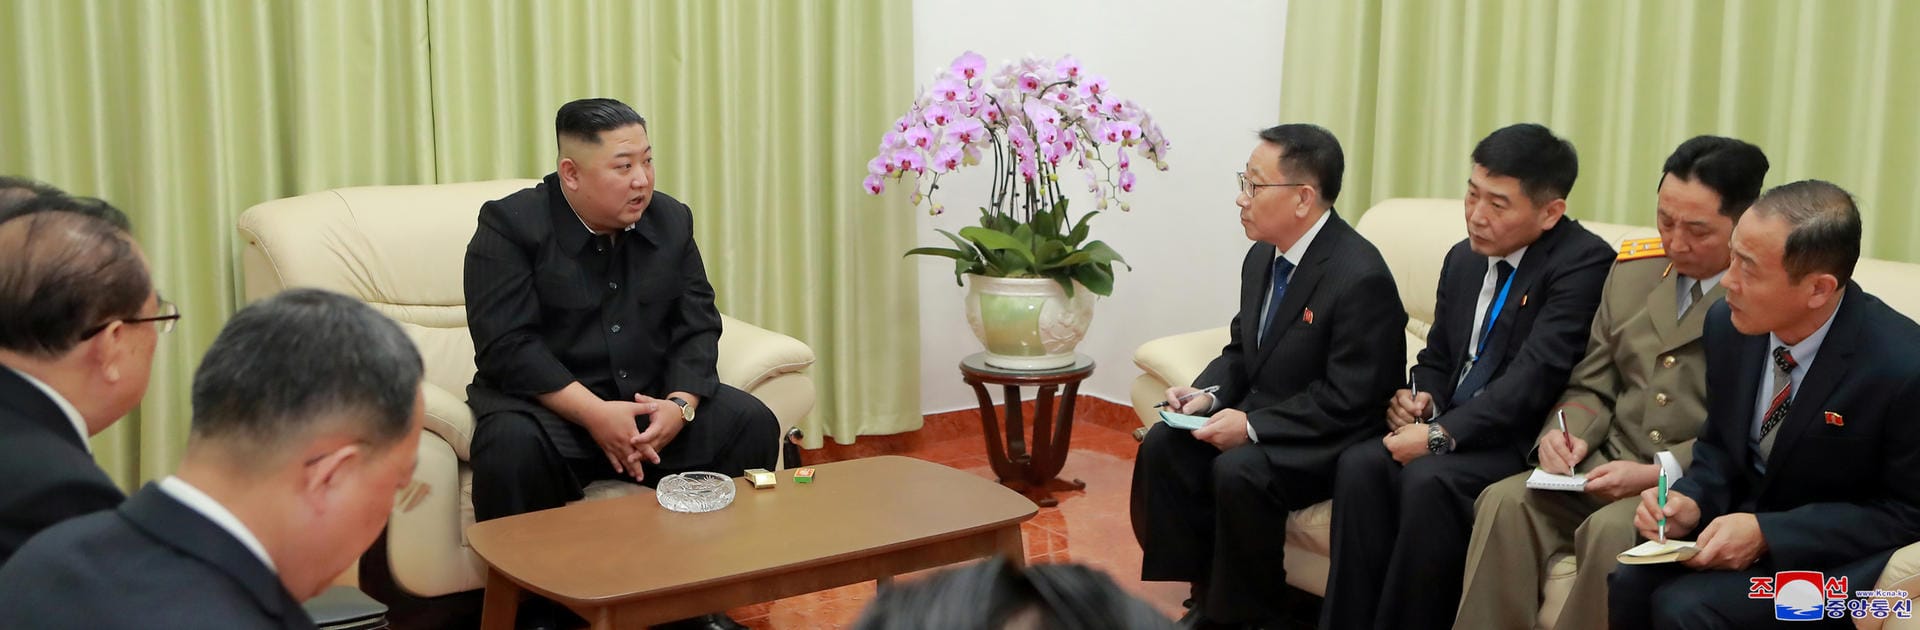 Kim besuchte am Dienstag außerdem die Nordkoreanische Botschaft in Hanoi.Jong Un visits the North Korean Embassy in Hanoi. Auch dieses Bild hat die staatliche Nachrichtenagentur KCNA verbreitet.